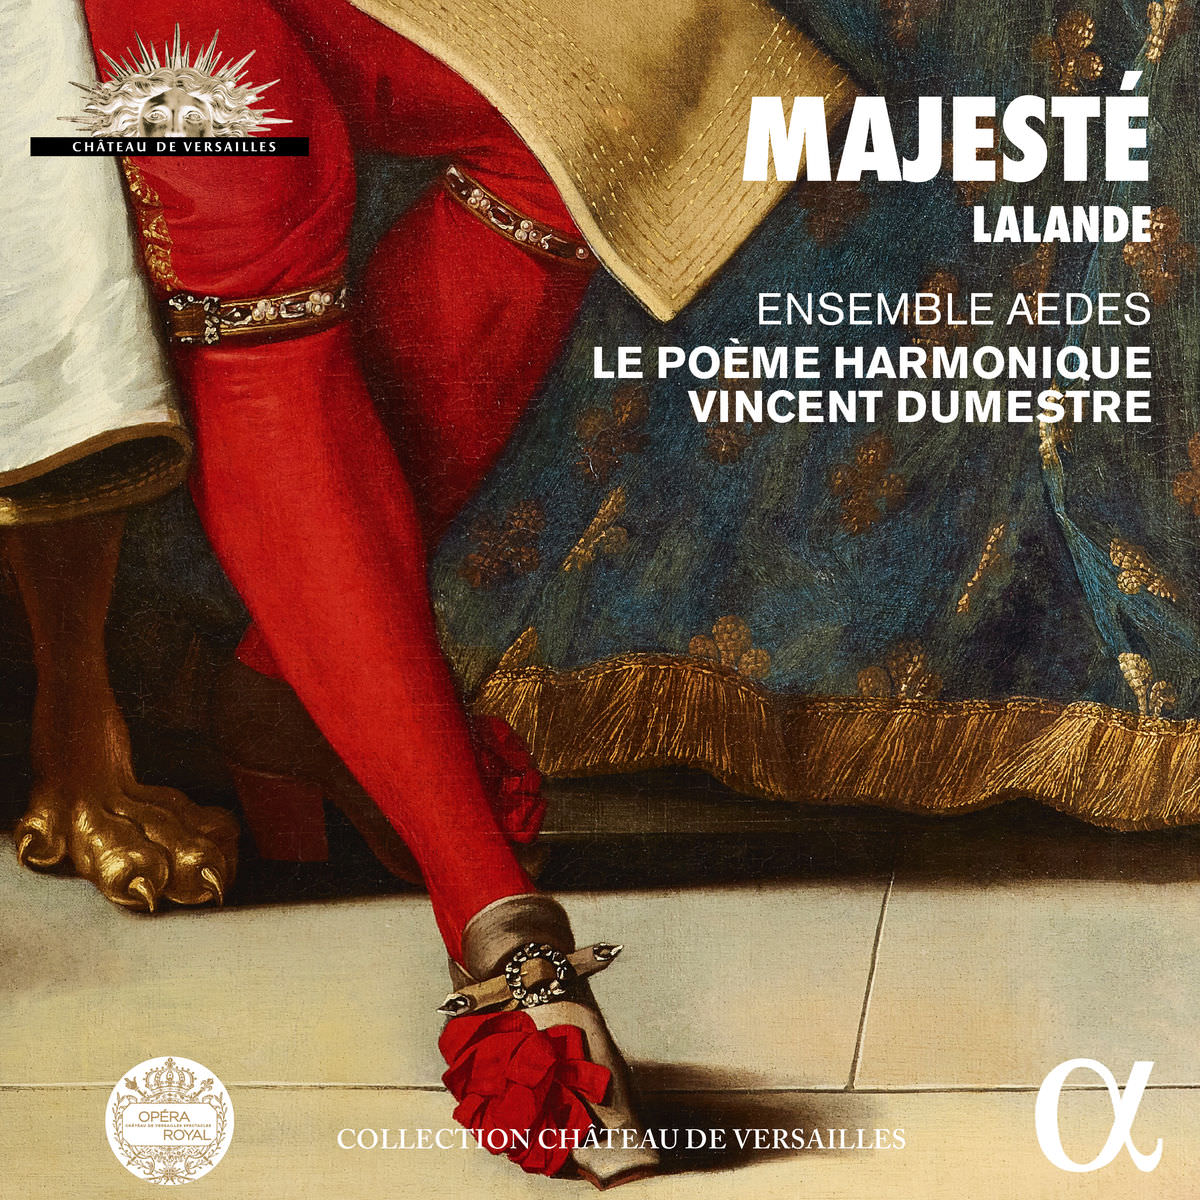 Ensemble Aedes & Le Poeme Harmonique, Vincent Dumestre - Lalande: Majeste (2018) [FLAC 24bit/96kHz]